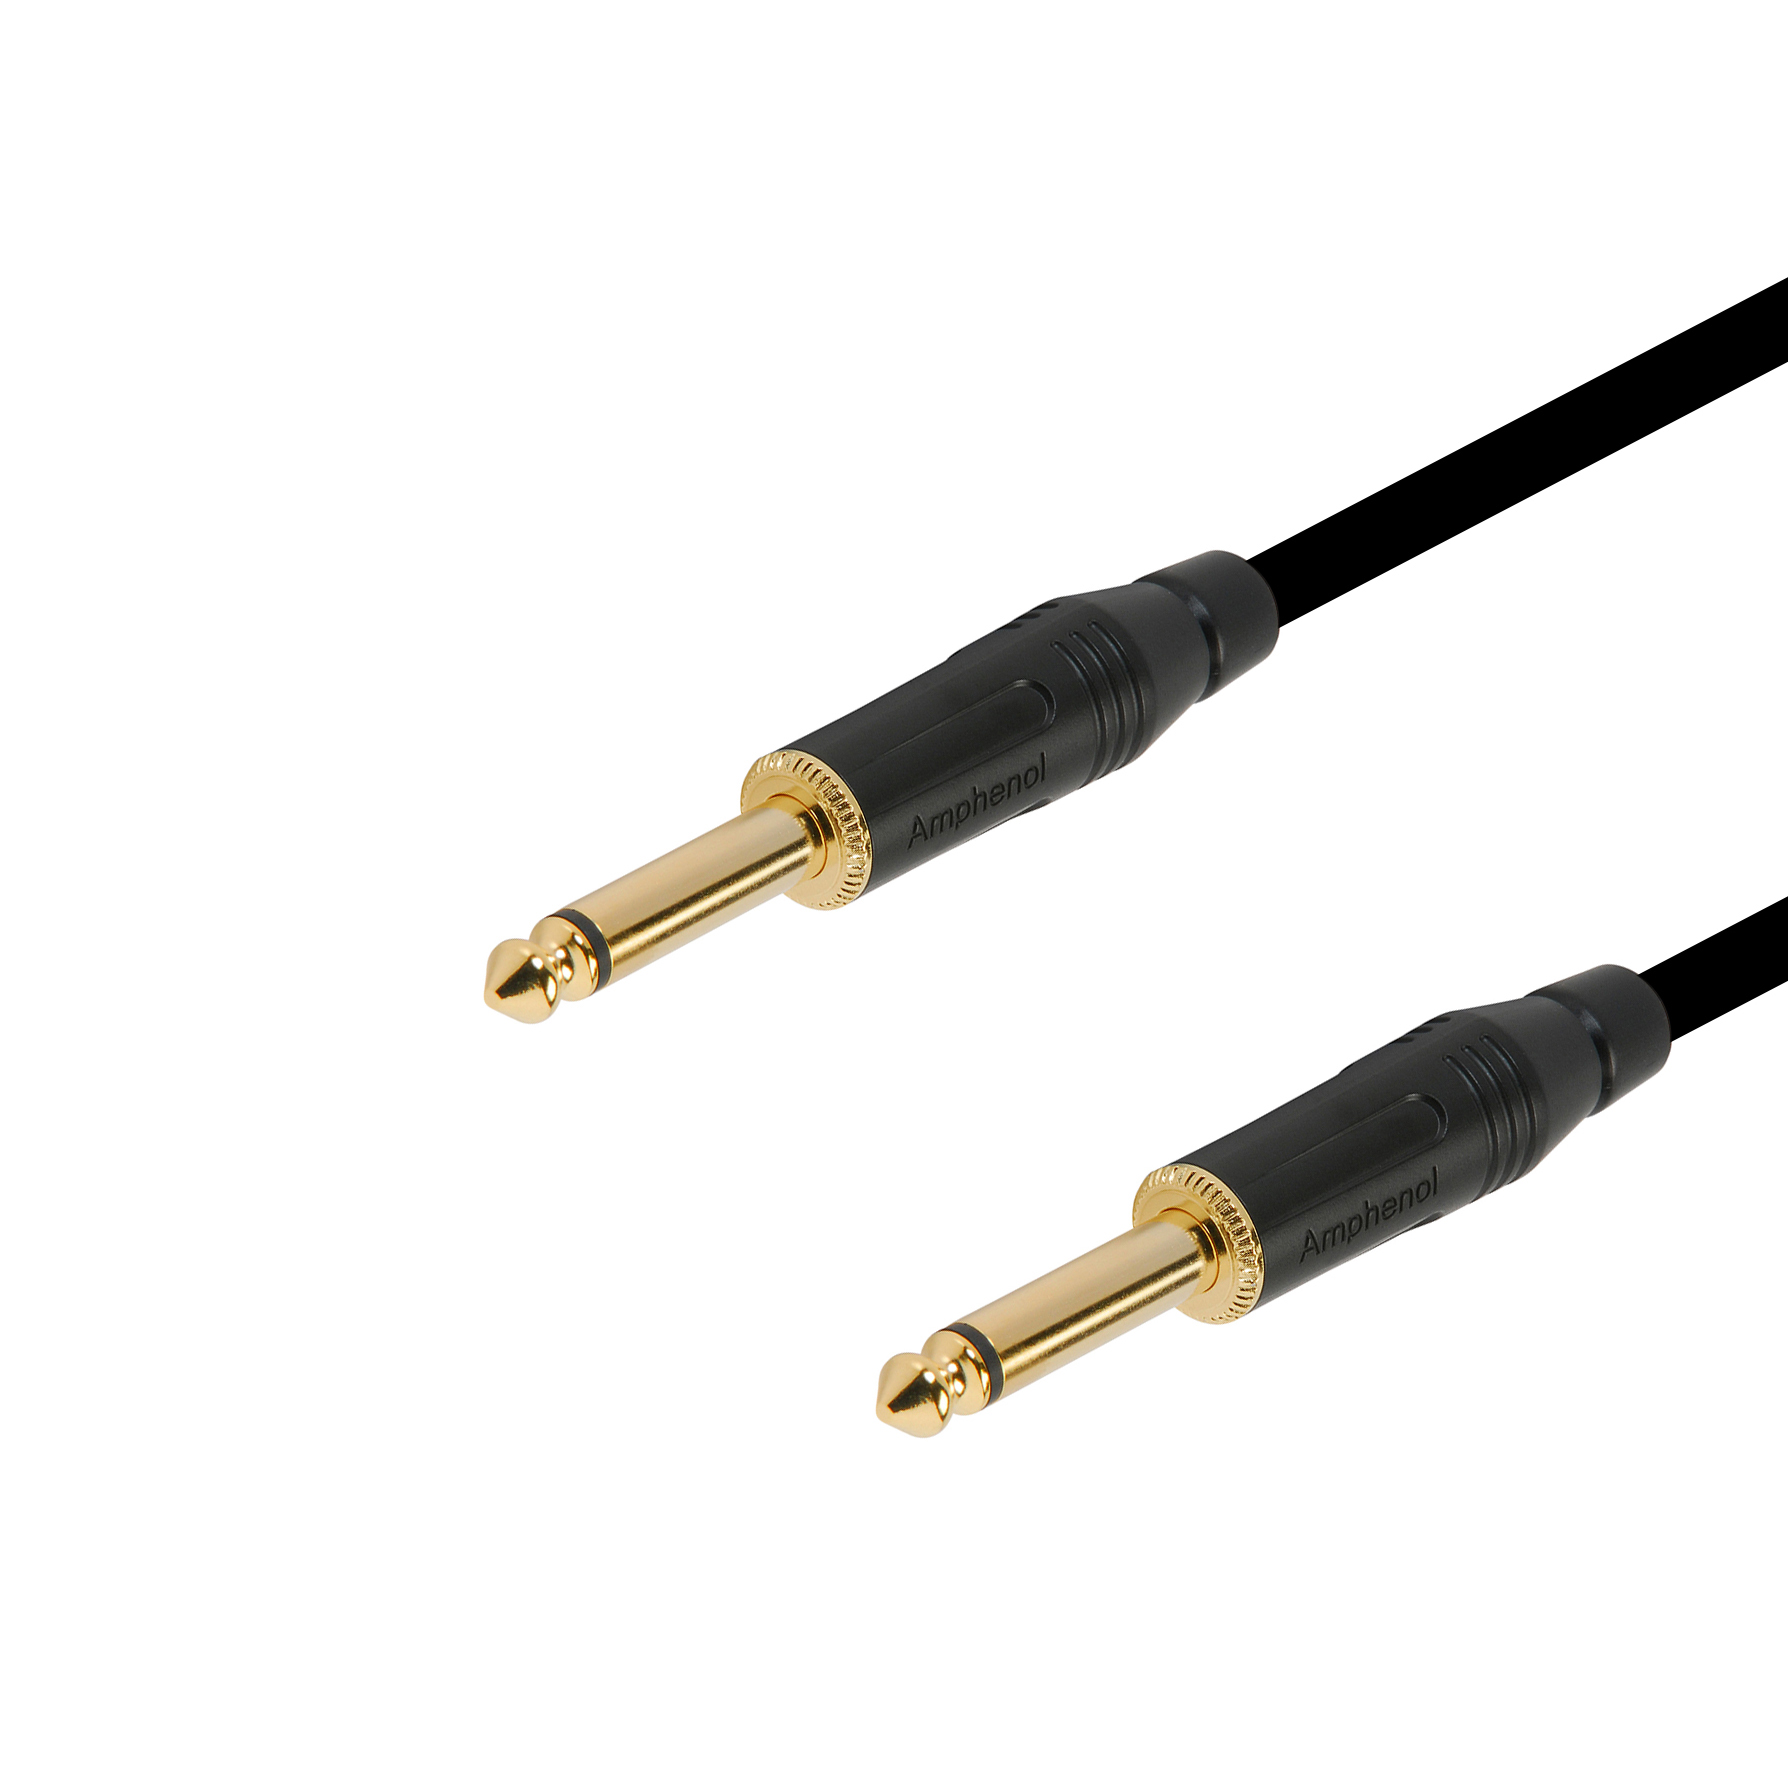 7м профессиональный инструментальный аудио кабель Jack - Jack 6.3 mm mono Amphenol Gold Кабели  Jack - Jack 6.3 mm mono стандартные (ins1)